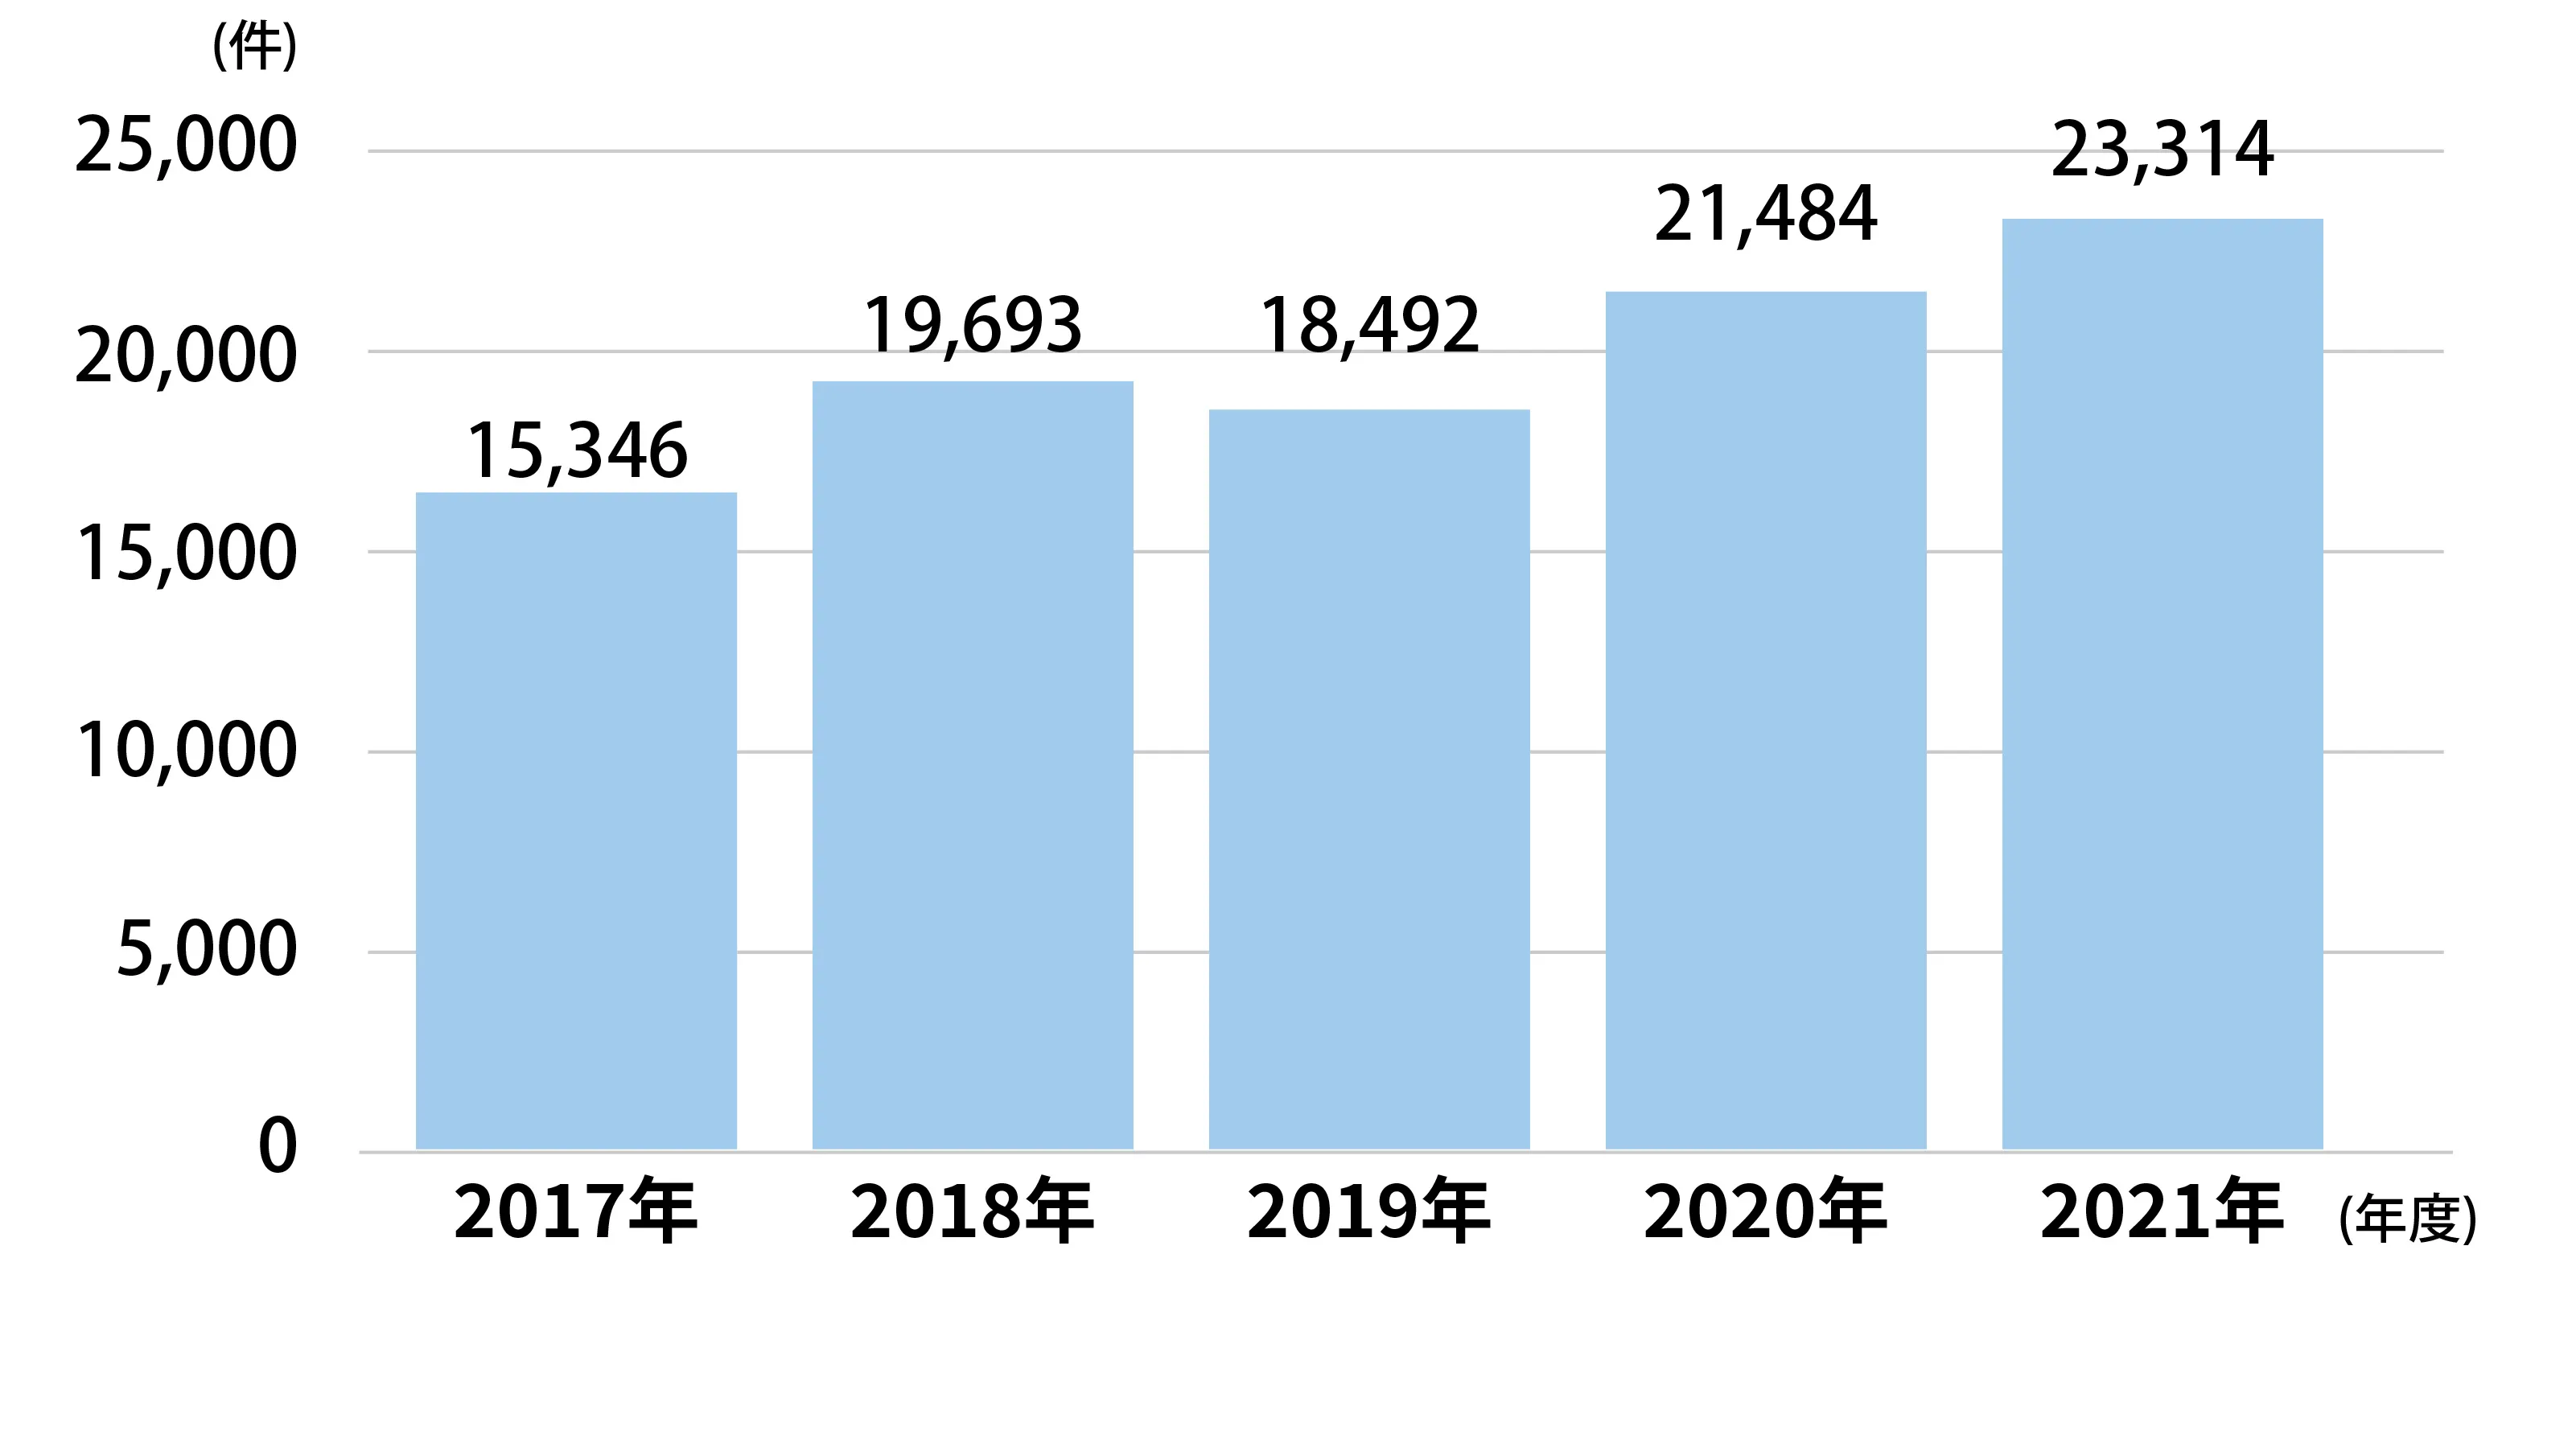 「性と健康の相談センター」への相談件数は年々増加している。令和元年が1万8,492件、令和２年（2020年）が2万1,484件、令和３年（2021年）が2万3,314件。